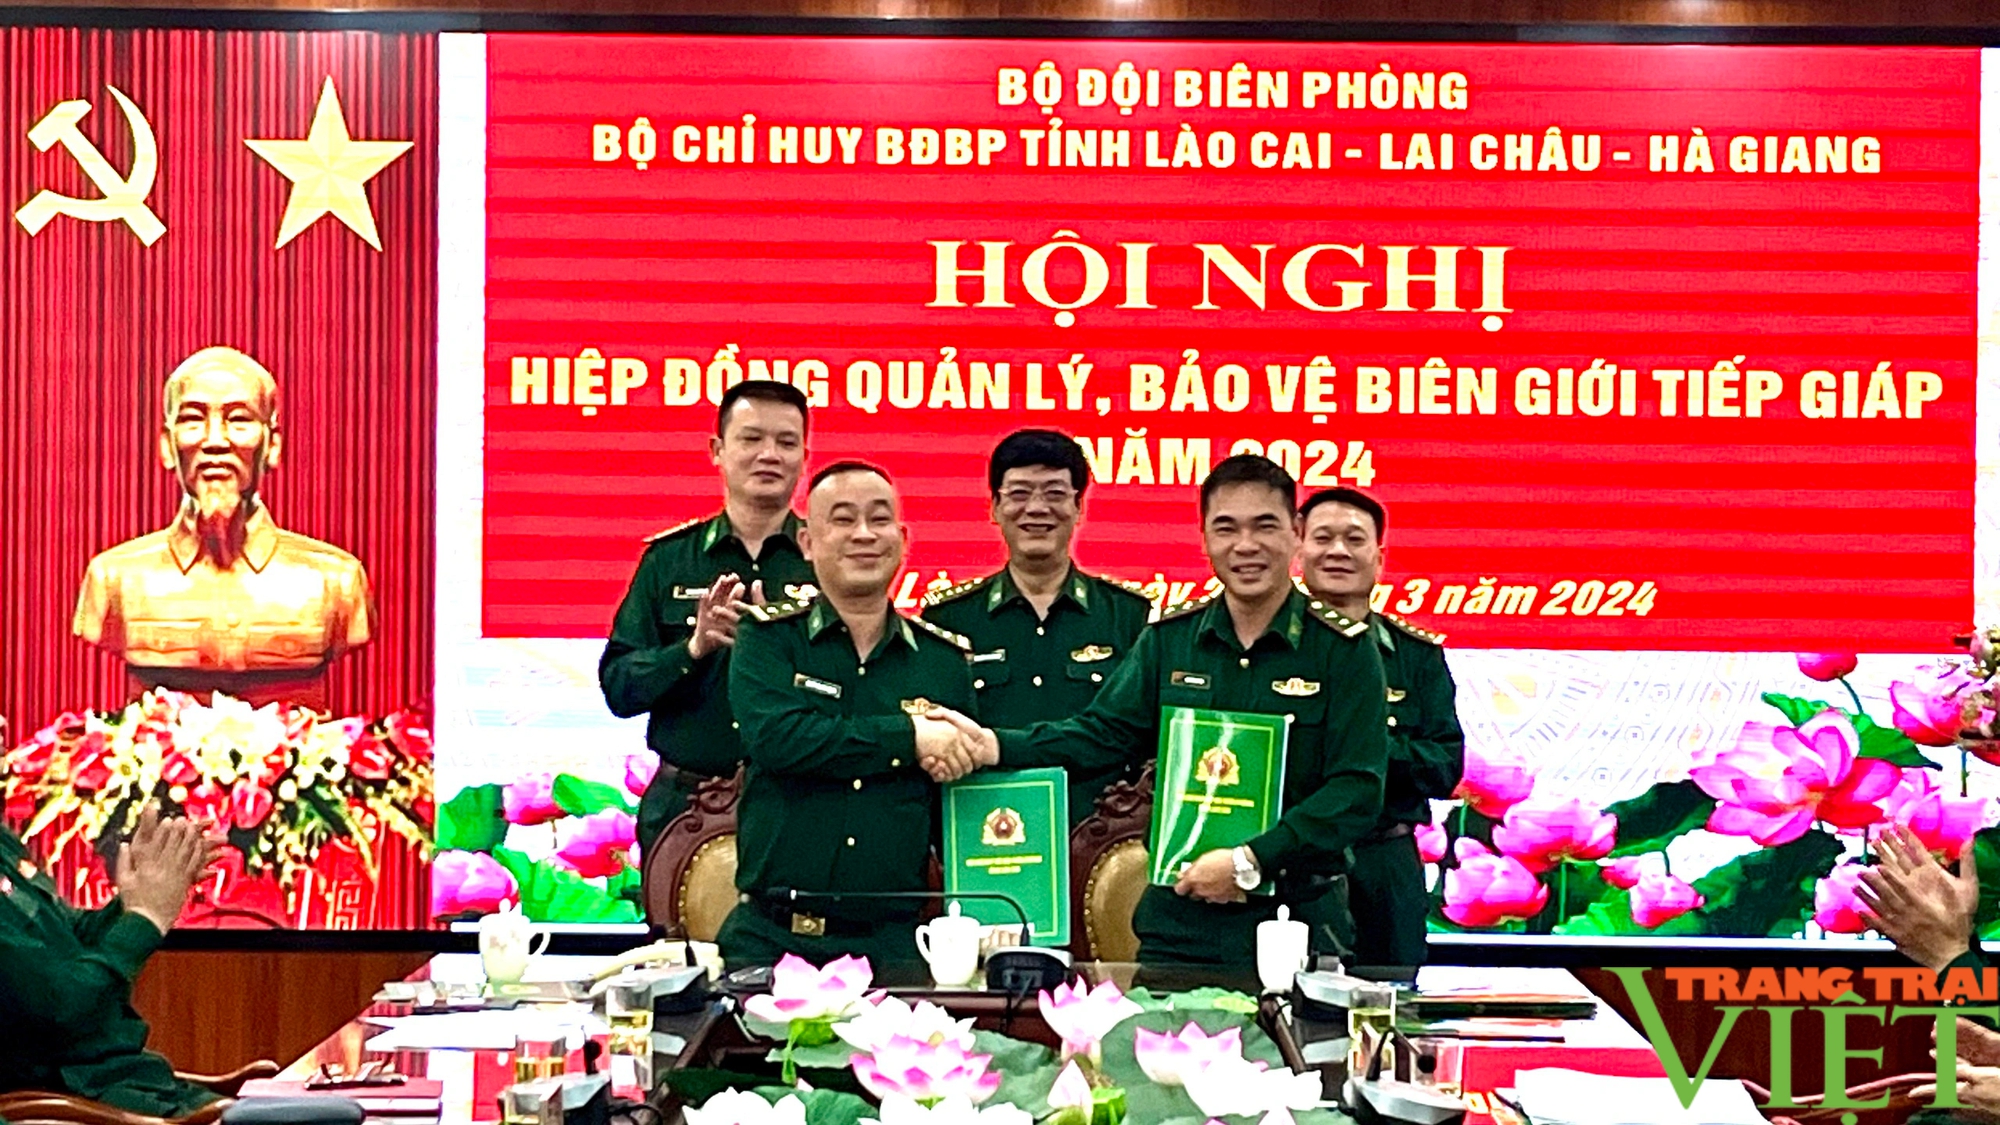 Bộ đội Biên phòng tỉnh Lai Châu, Lào Cai, Hà Giang hiệp đồng bảo vệ biên giới tiếp giáp- Ảnh 3.